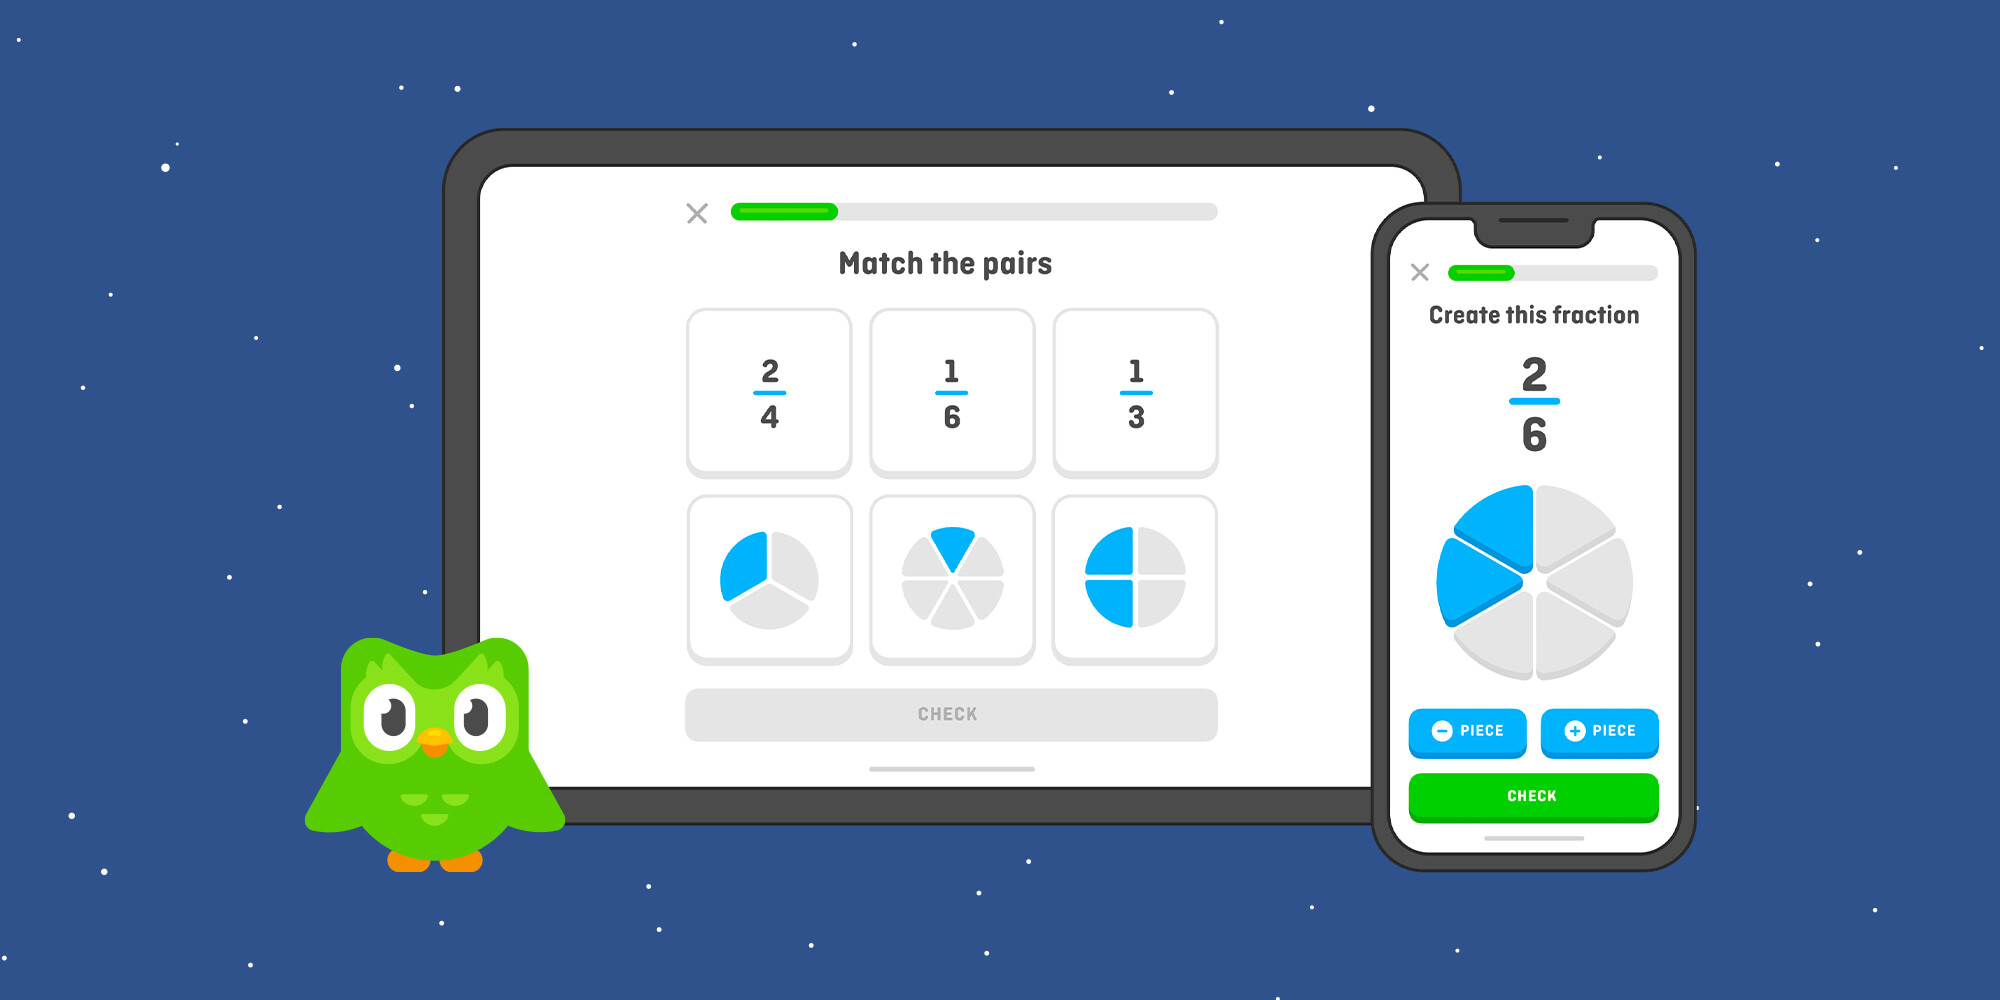 Como eu posso aprender com o Duolingo? – Central de Ajuda do Duolingo